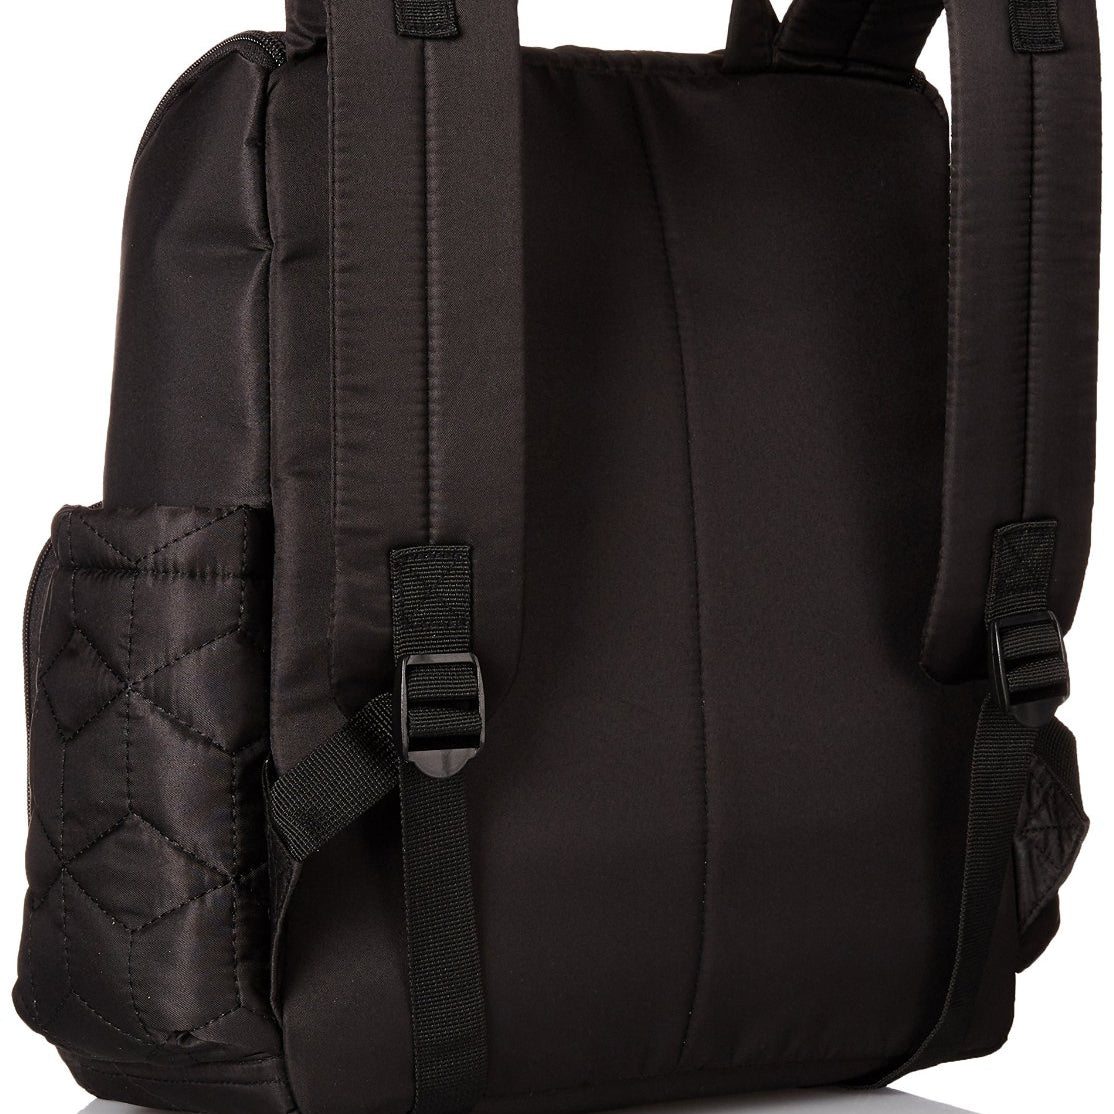 Forma Backpack Diaper Bag Jet Black